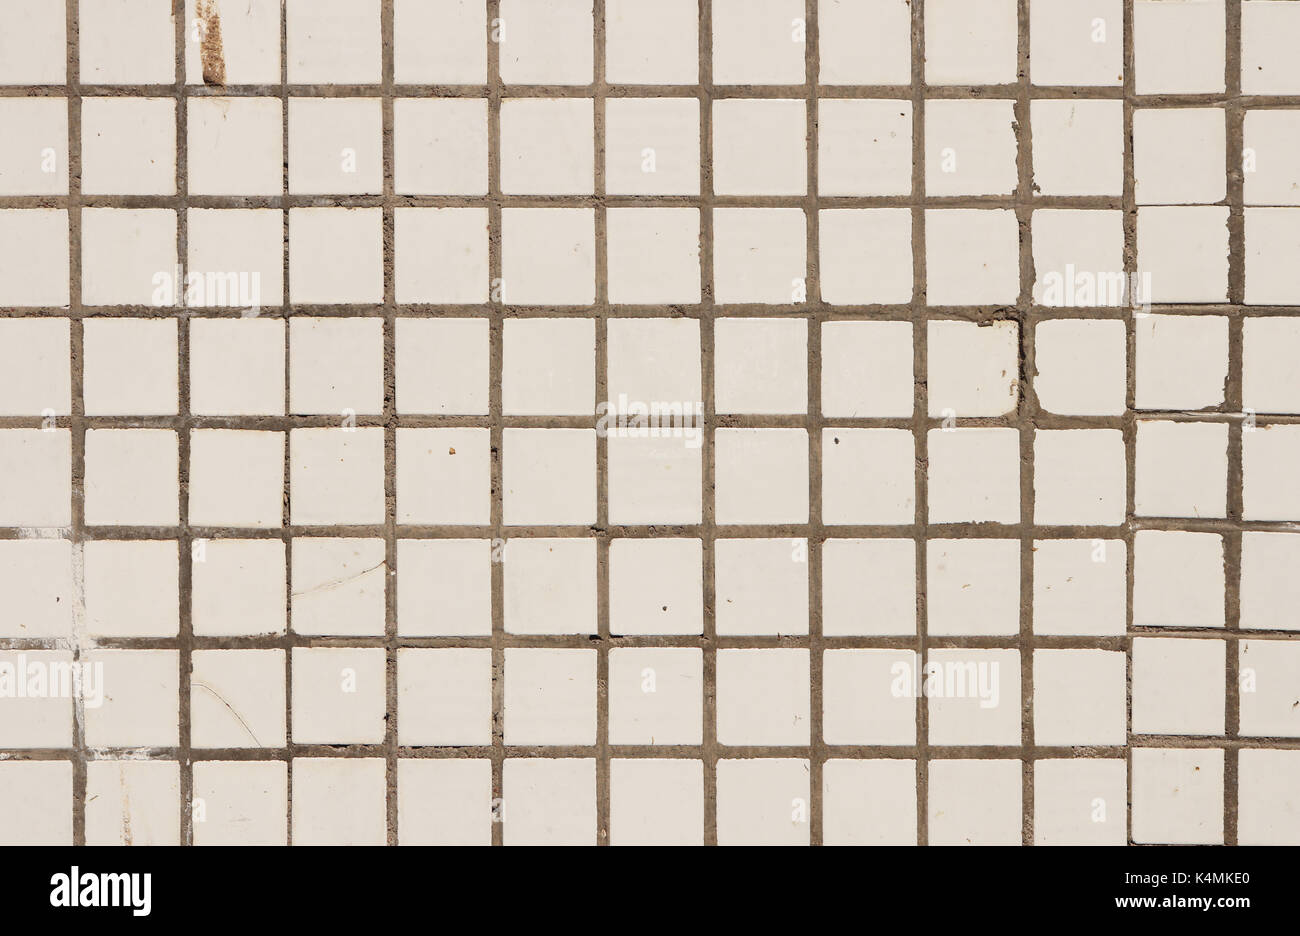 Small White Tiles Wall Texture. Urban Street Background. Stock Photo